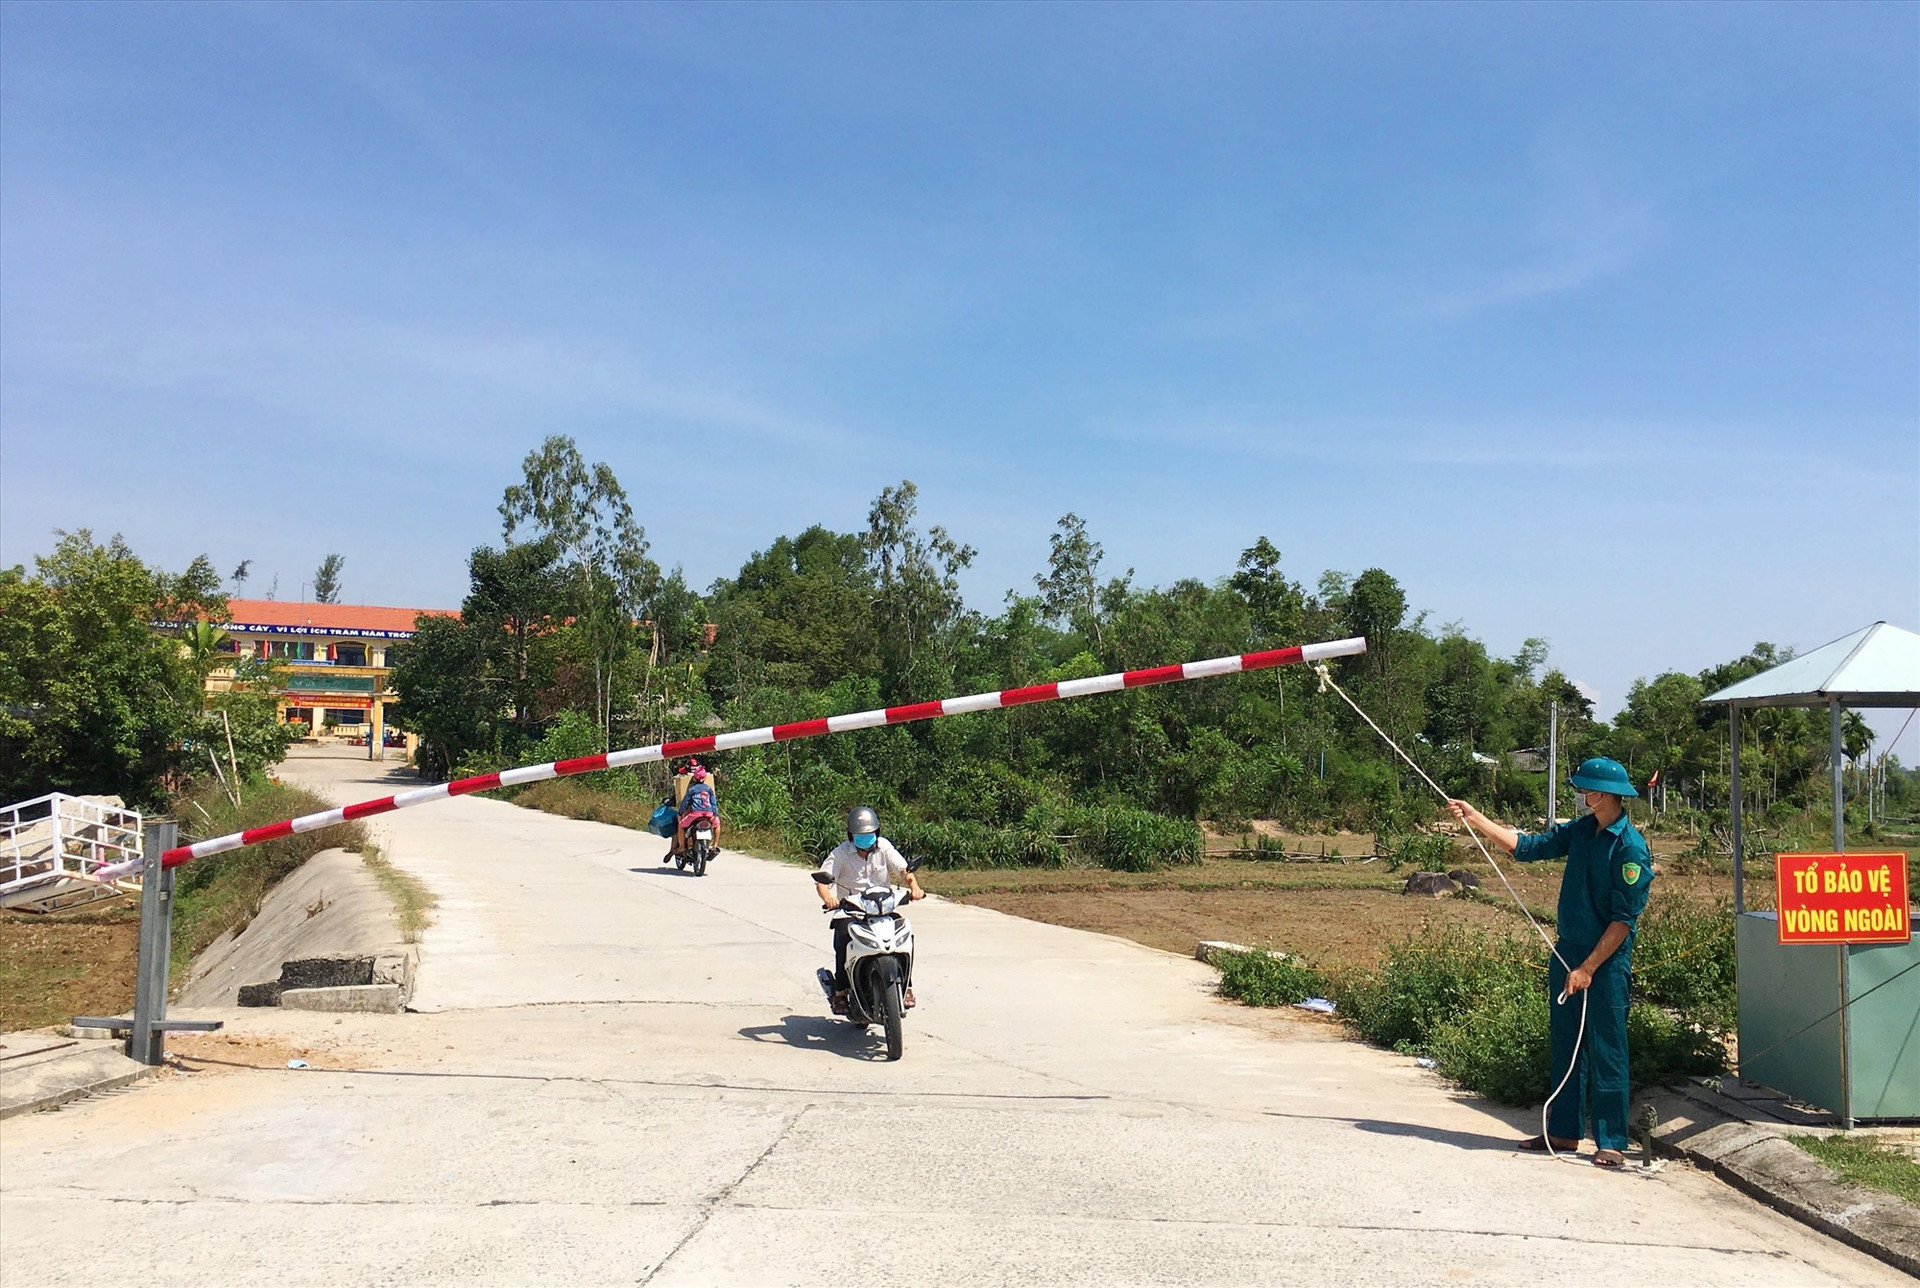 Khu cách ly tập trung trường Tiểu học Nguyễn Duy Hiệu đảm bảo đầy đủ các điều kiện để chăm sóc tốt những người cách ly.